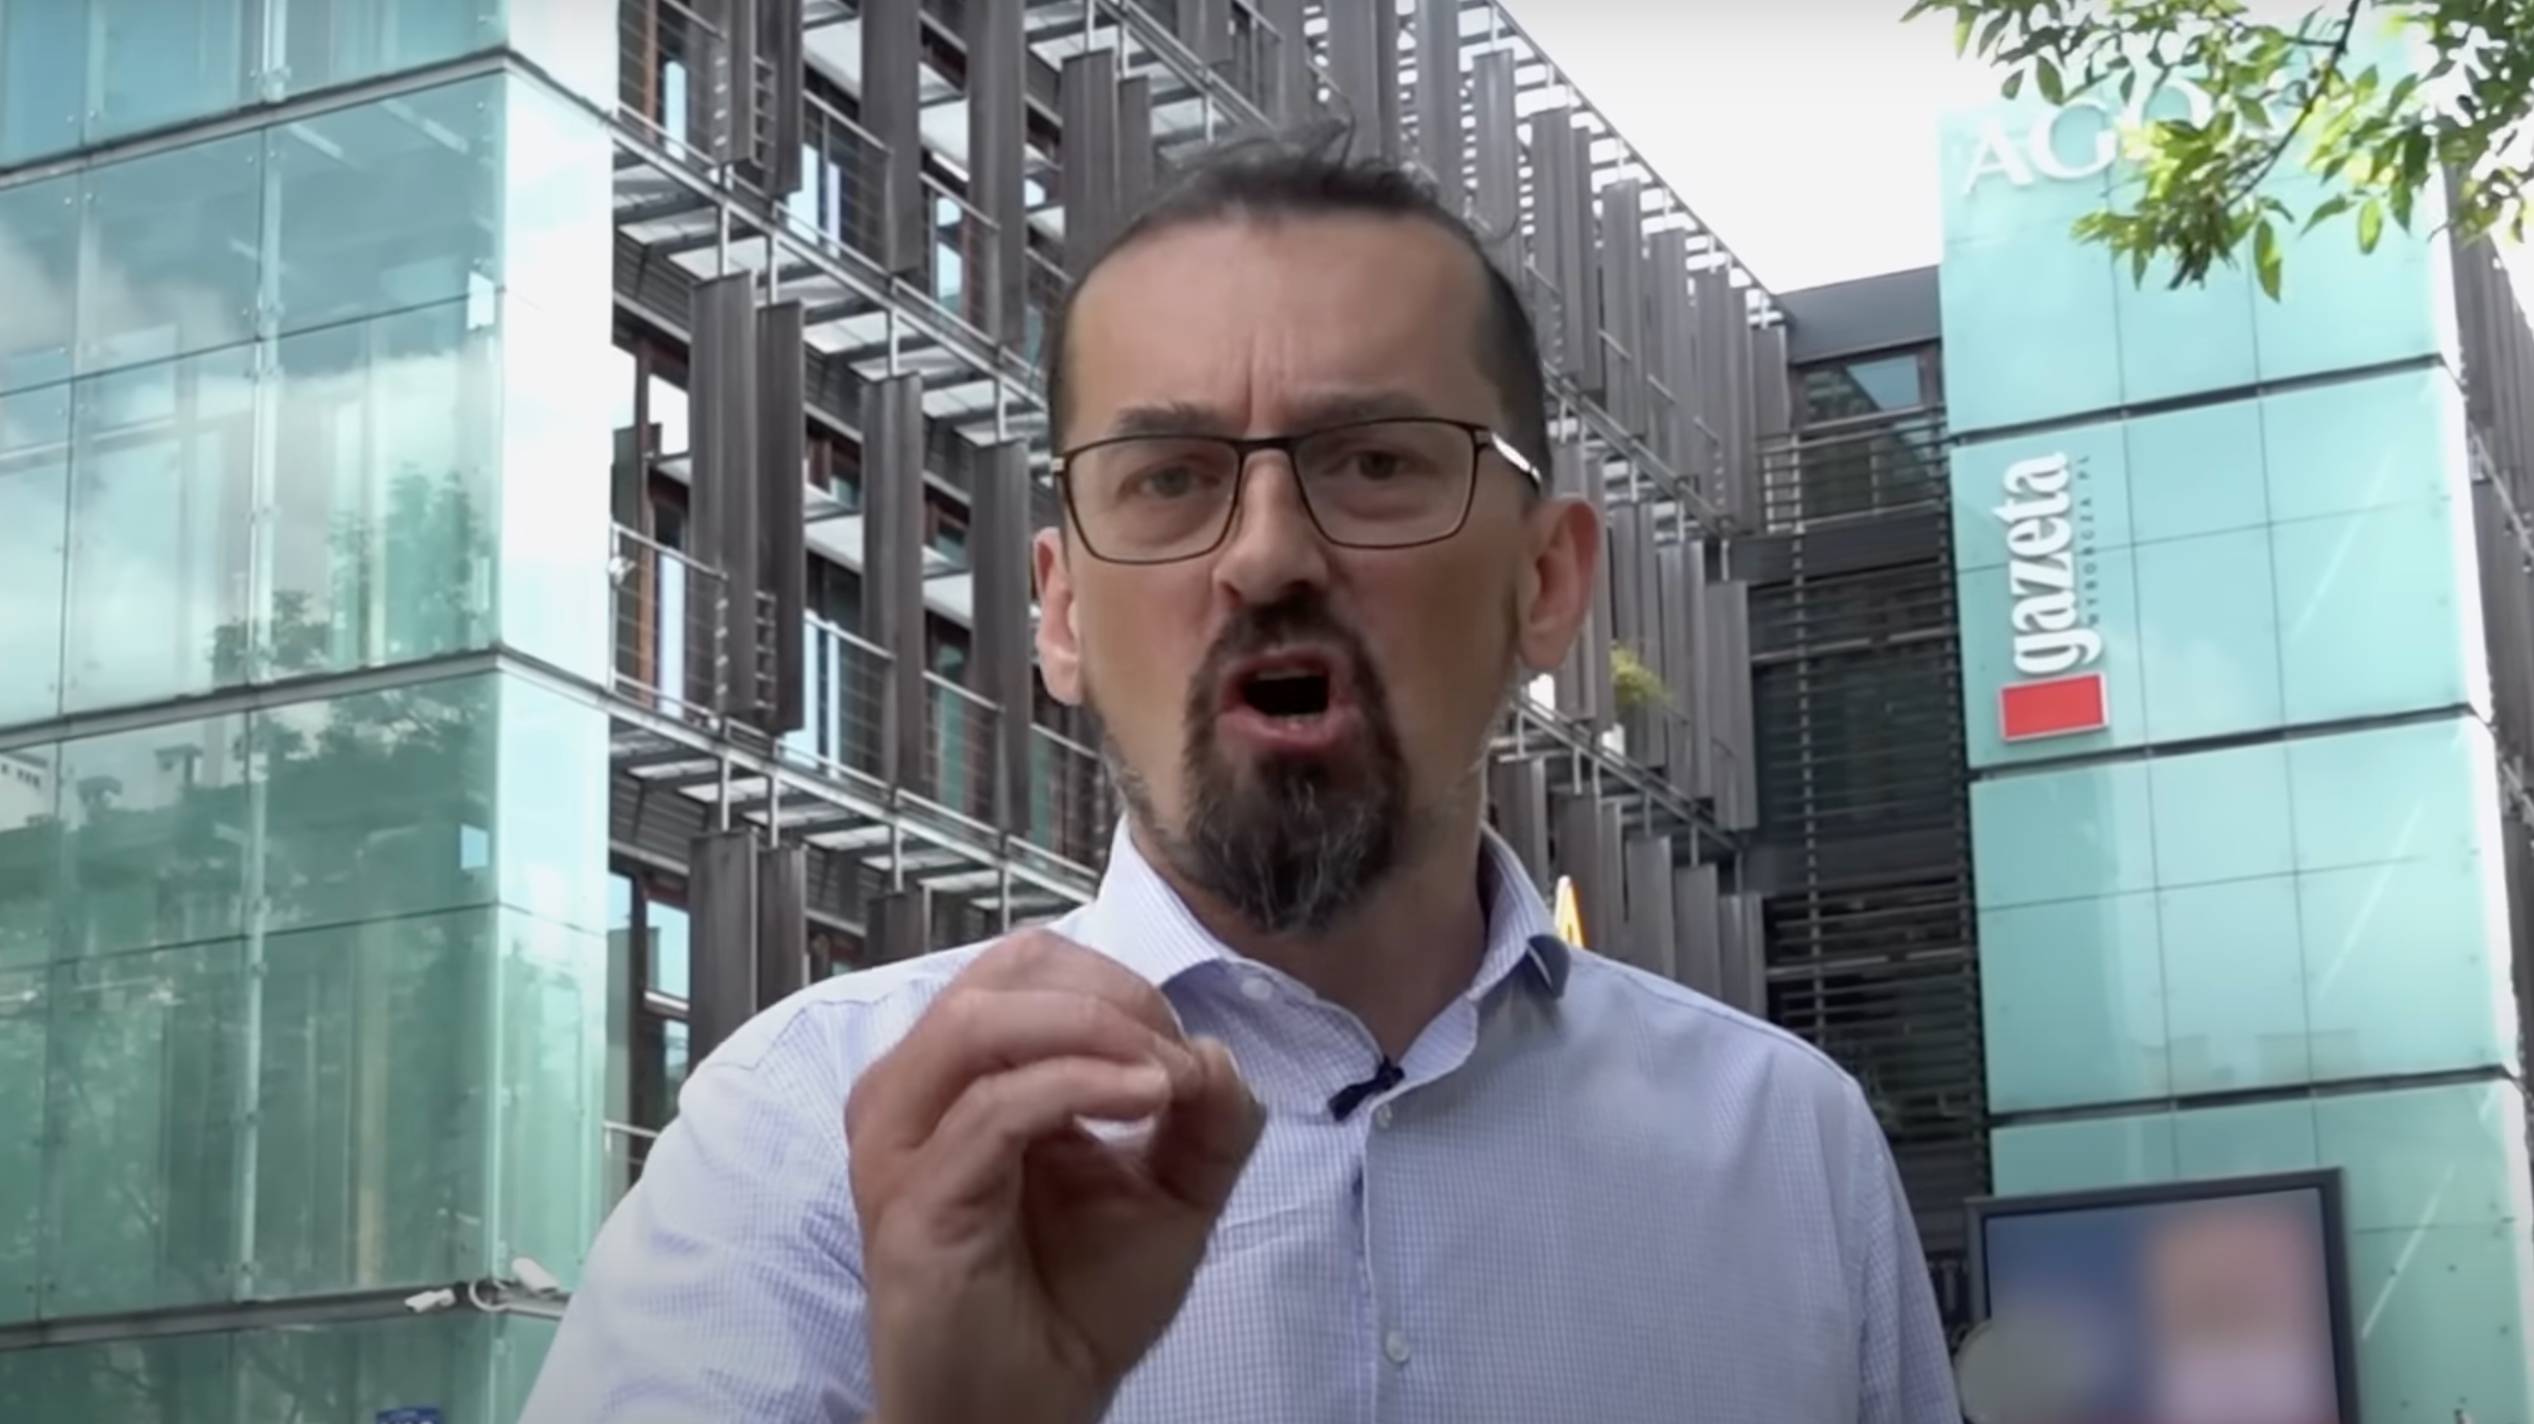 Mariusz Zielke przemawia do kamery na tle budynku Agory z logo "Gazety Wyborczej". Kadr z filmu "Bagno".